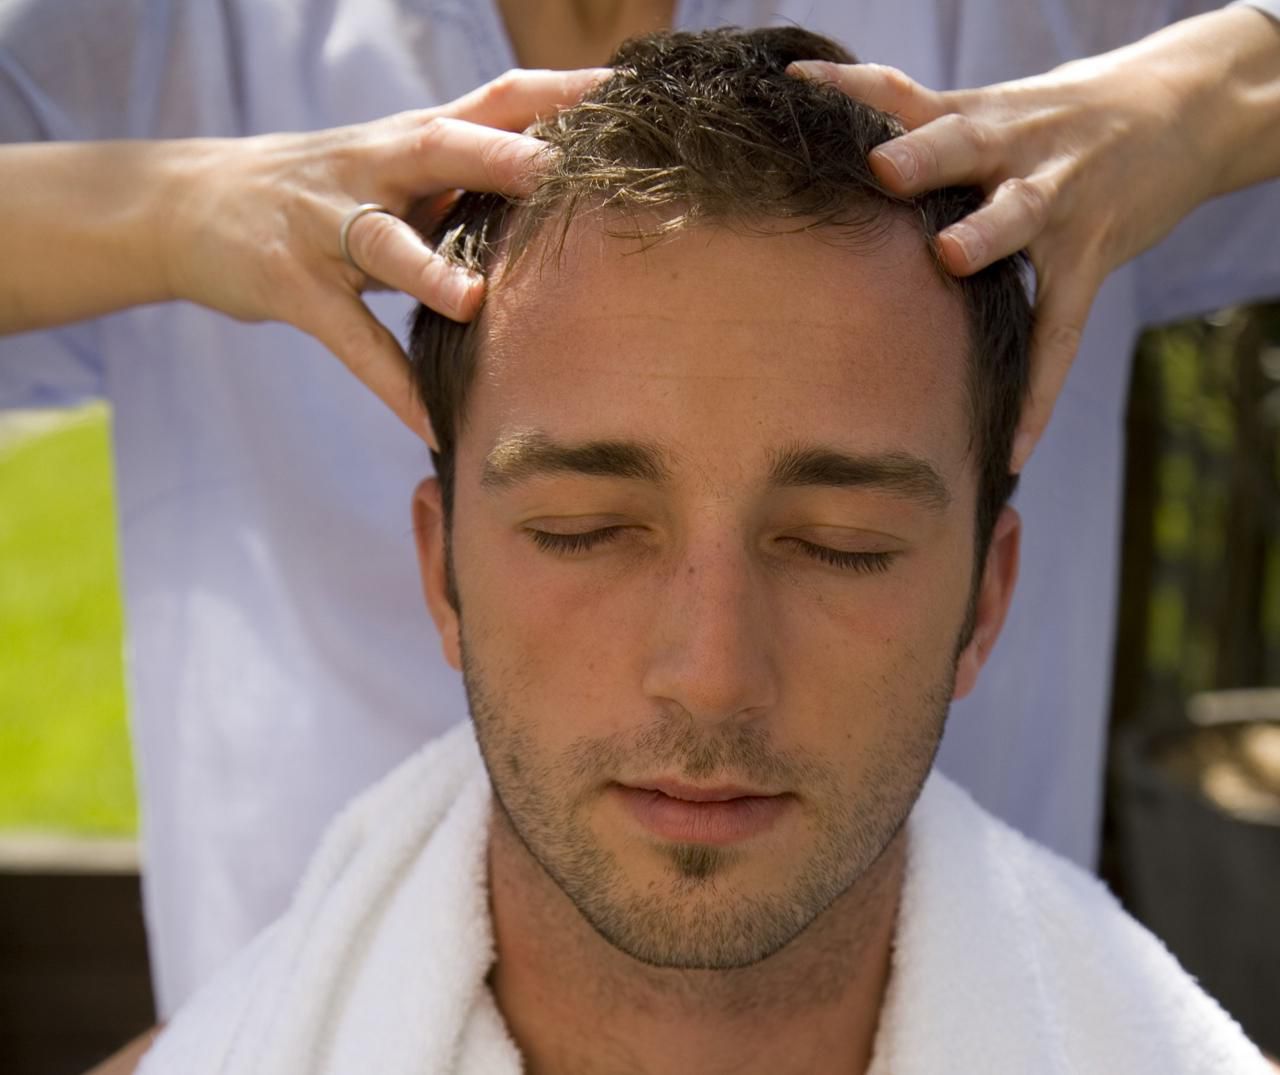 Head Massage, Hair Wash, Hair Cut